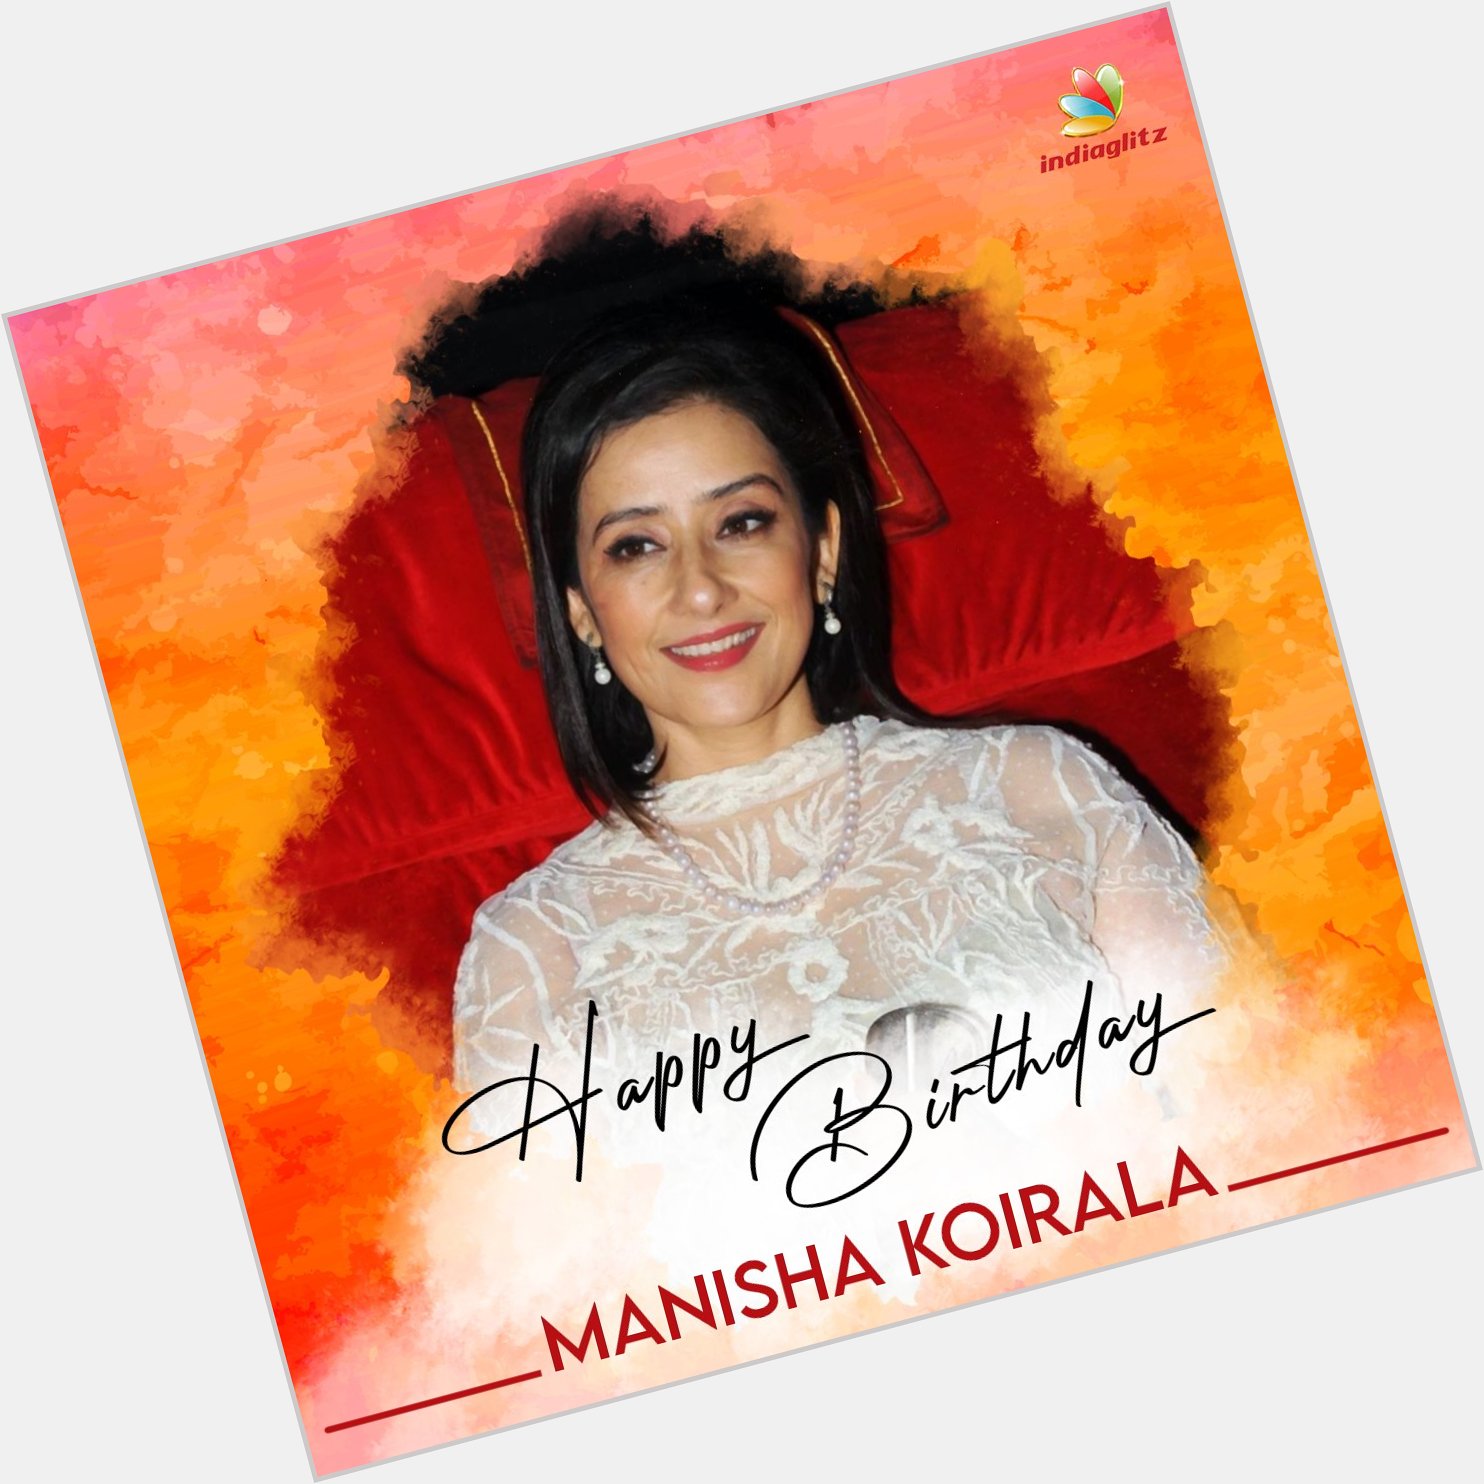 Wishing Actress Manisha Koirala a Very Happy Birthday   